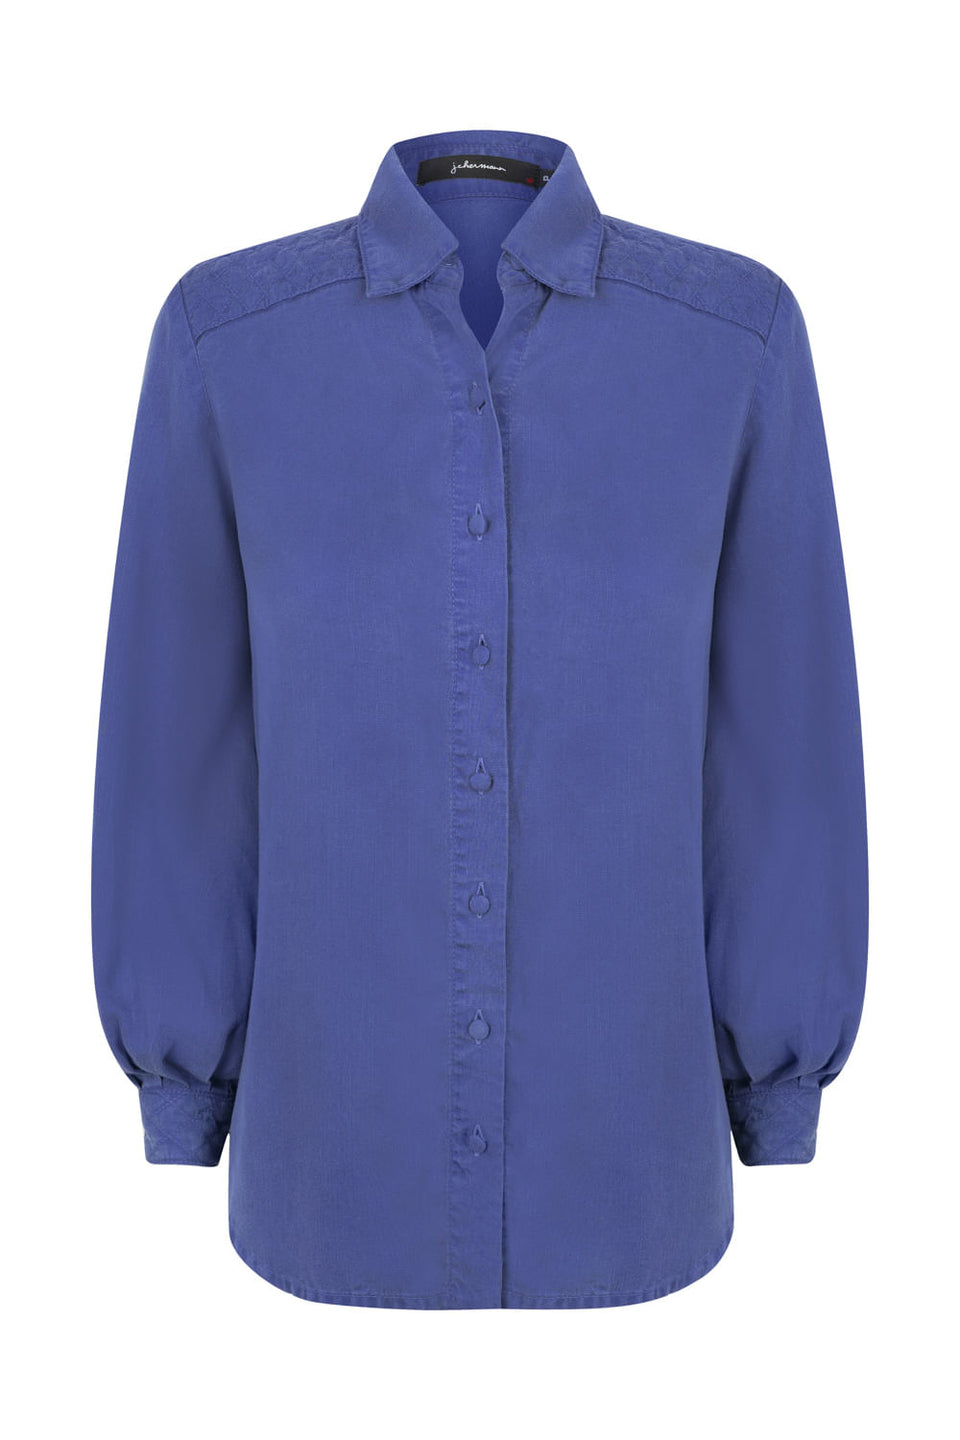 Camisa Matelasse Azul Royal